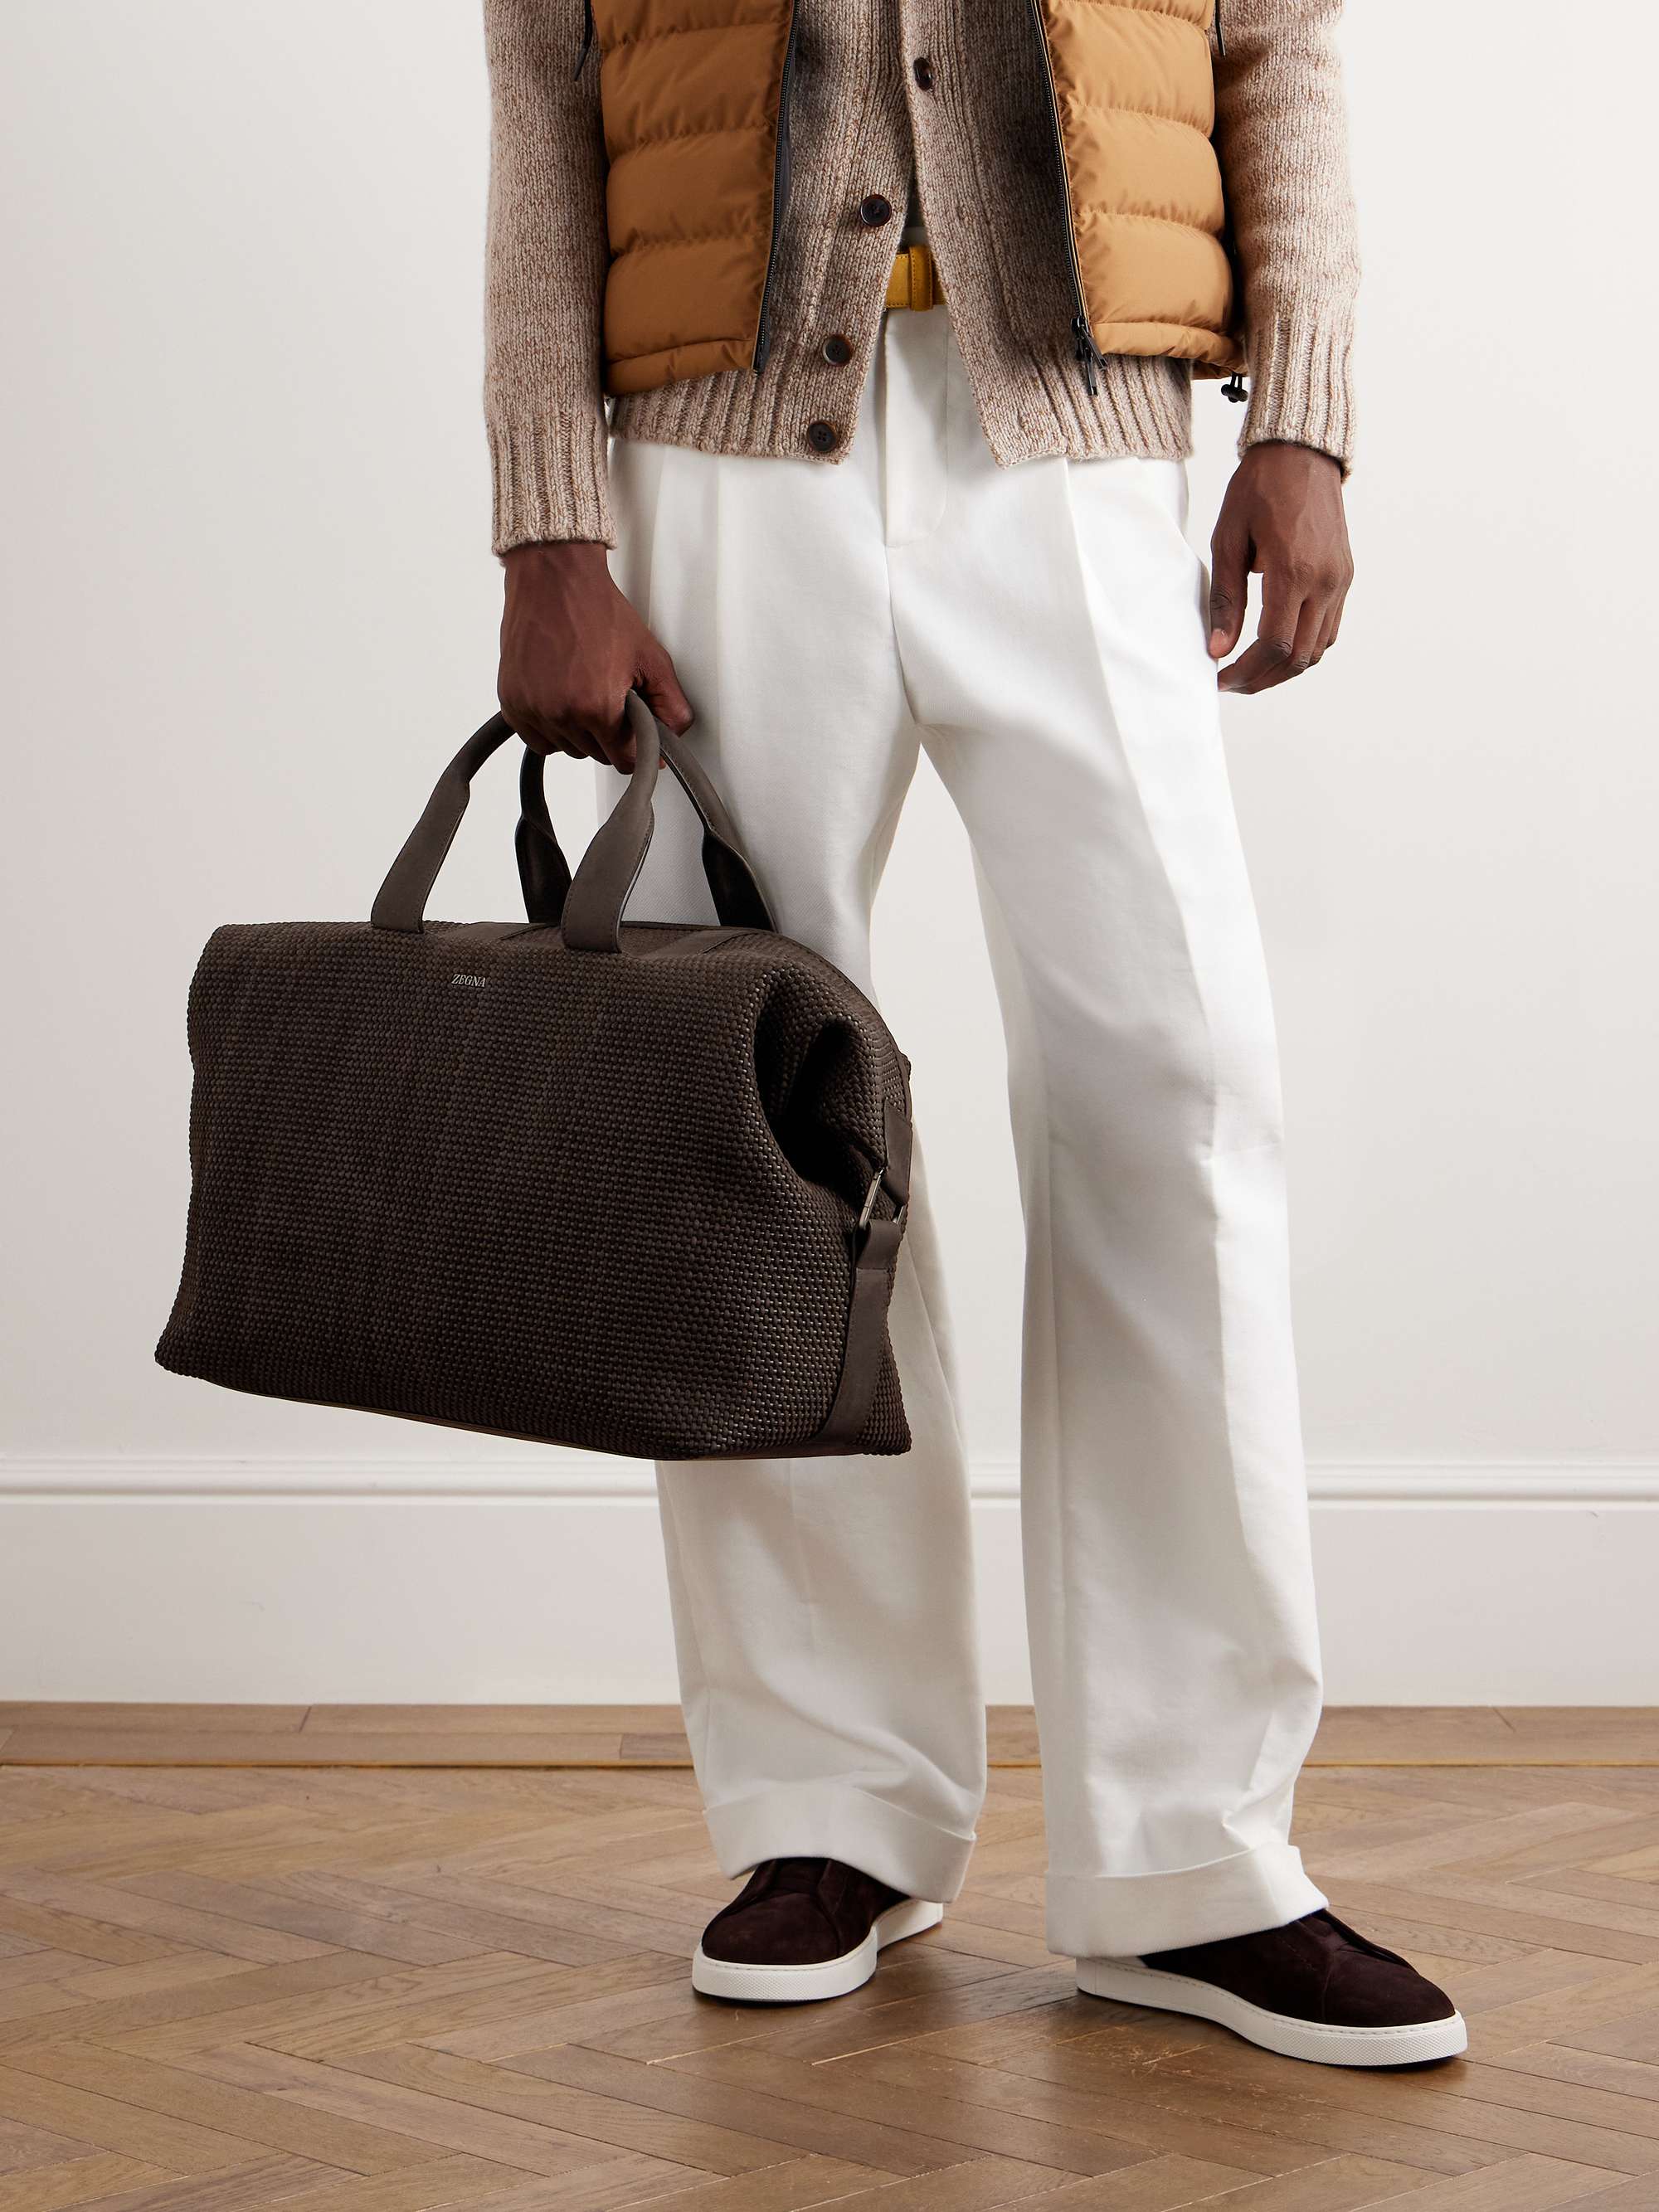 ZEGNA PELLETESSUTA™ Leather Holdall for Men | MR PORTER